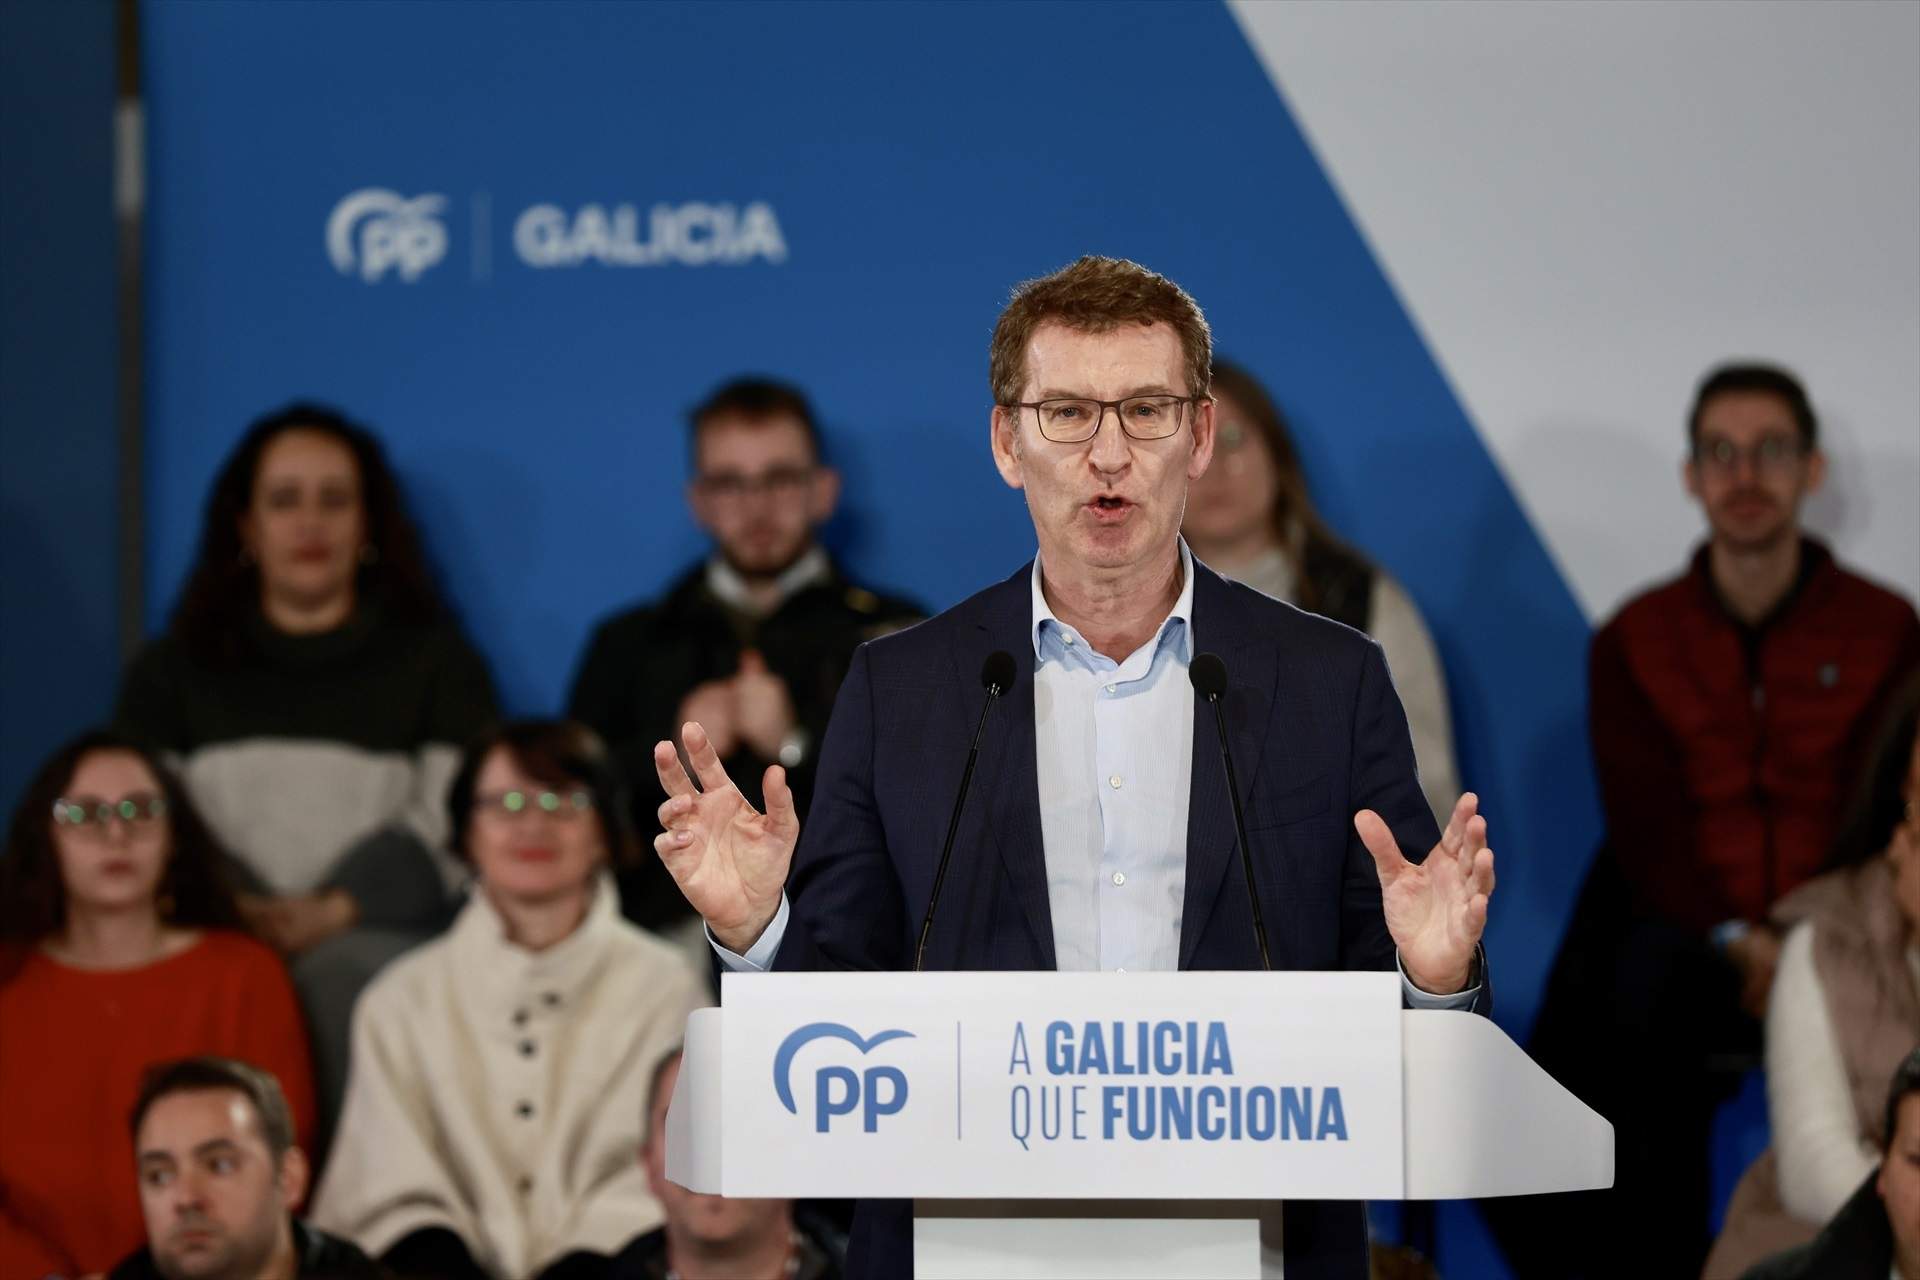 Feijóo recull cable sobre l’indult condicionat a Puigdemont: “No accepto ni acceptaré els indults”